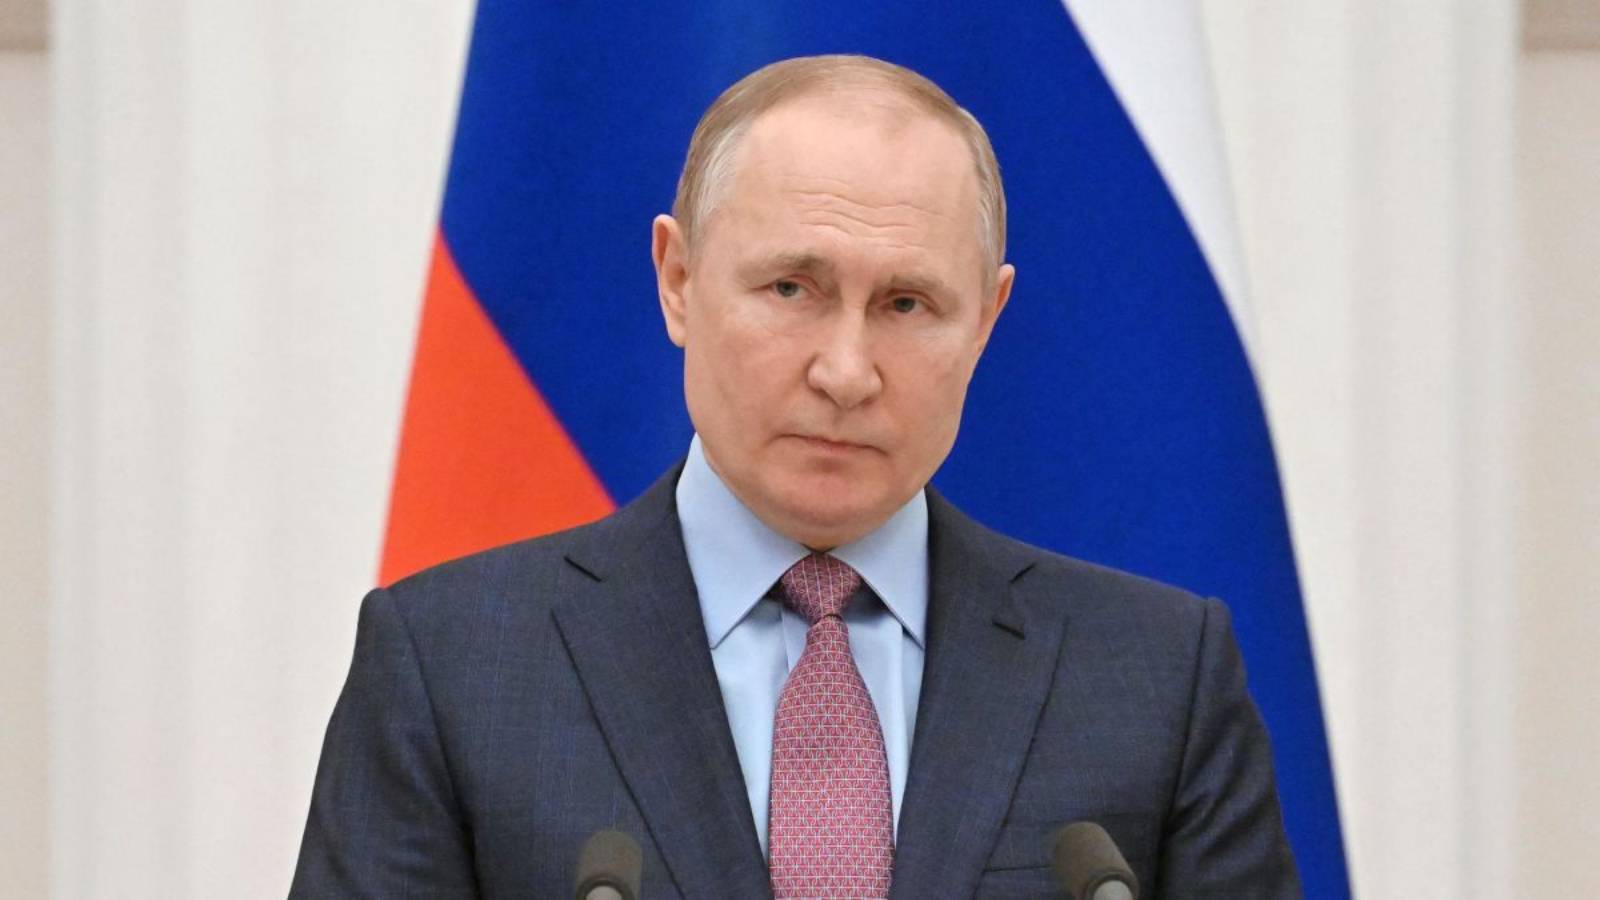 Vladimir Putin beslutar att fortsätta mobiliseringen av ryssar för kriget i Ukraina